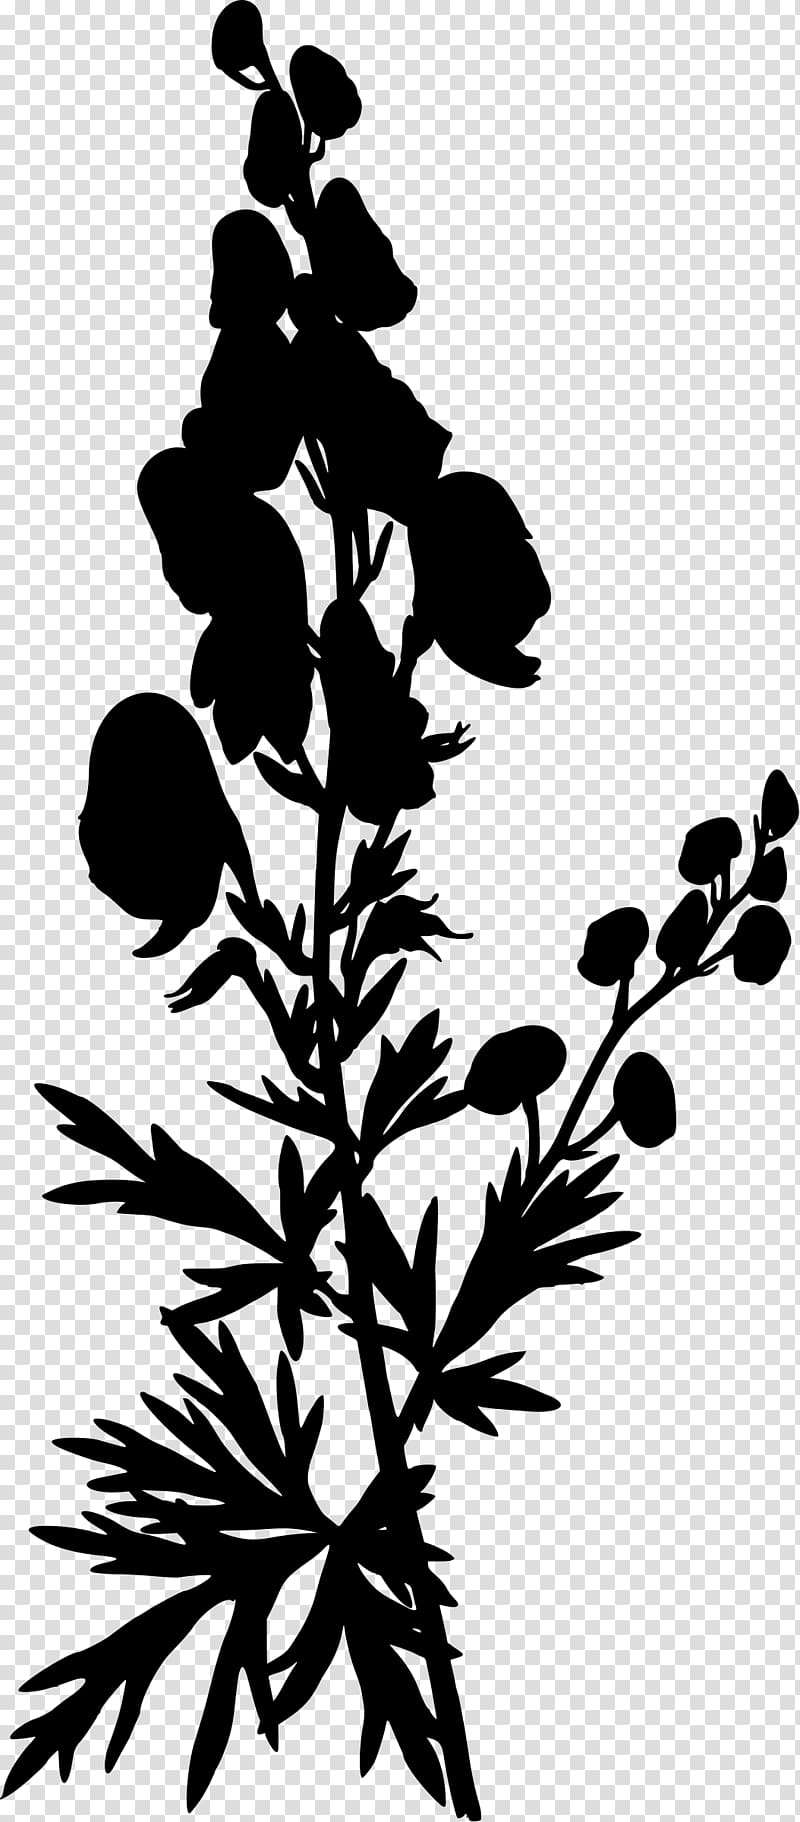 Köhler\'s Medicinal Plants Aconite Eudicots Aconitum lycoctonum, plant silhouette transparent background PNG clipart